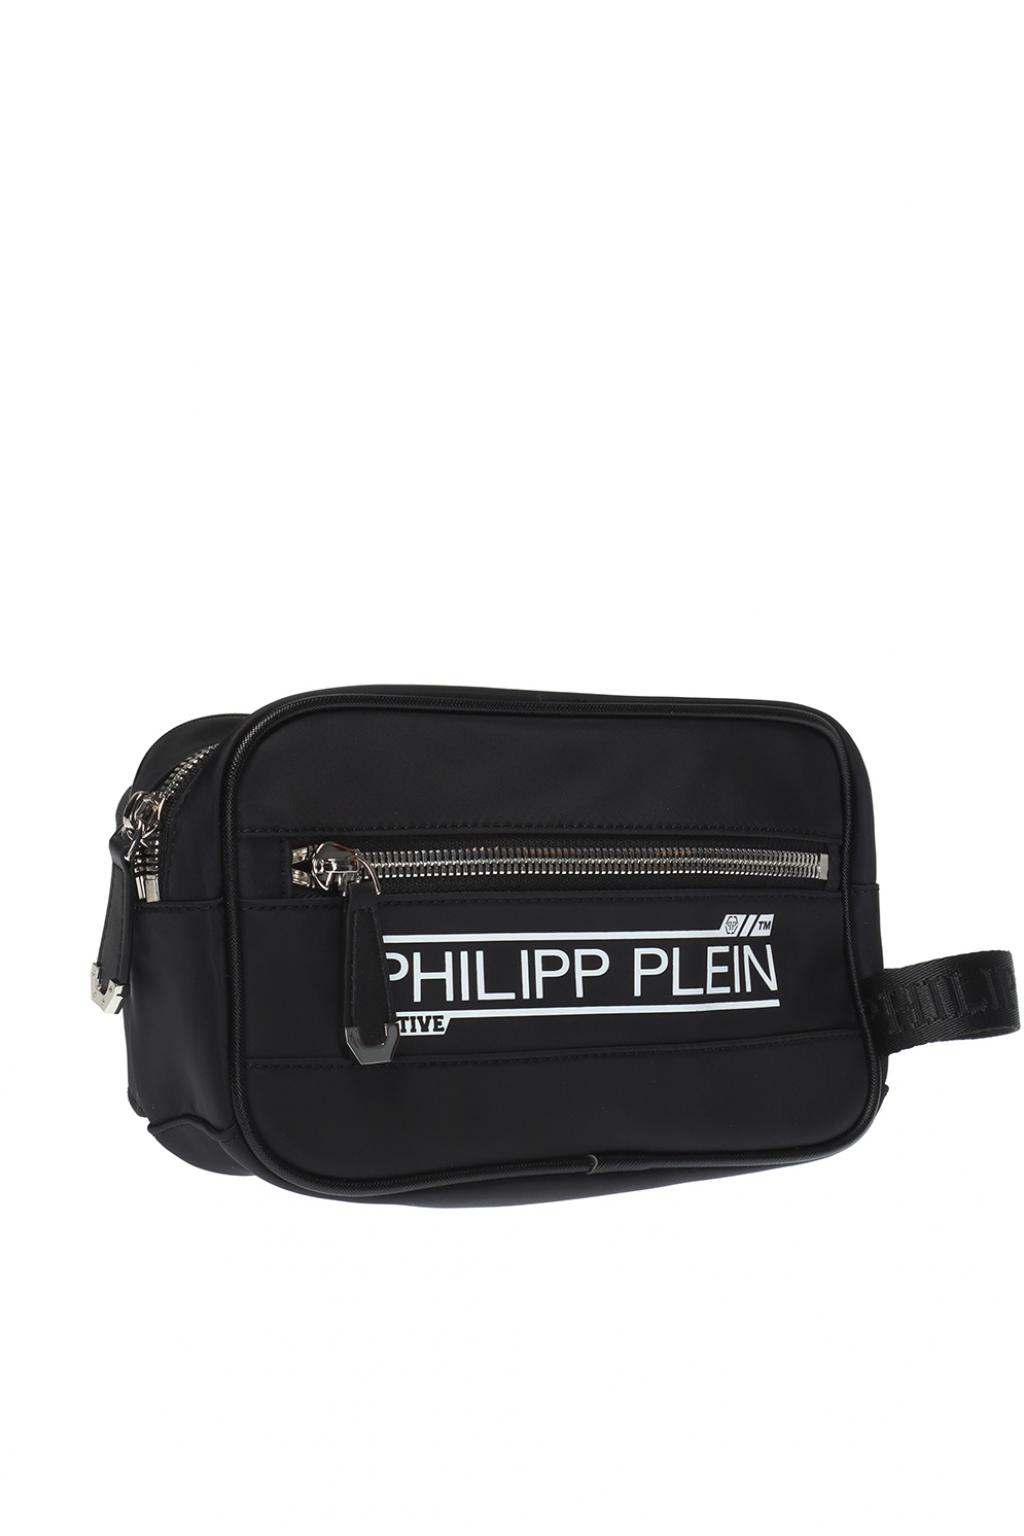 philipp plein bum bag